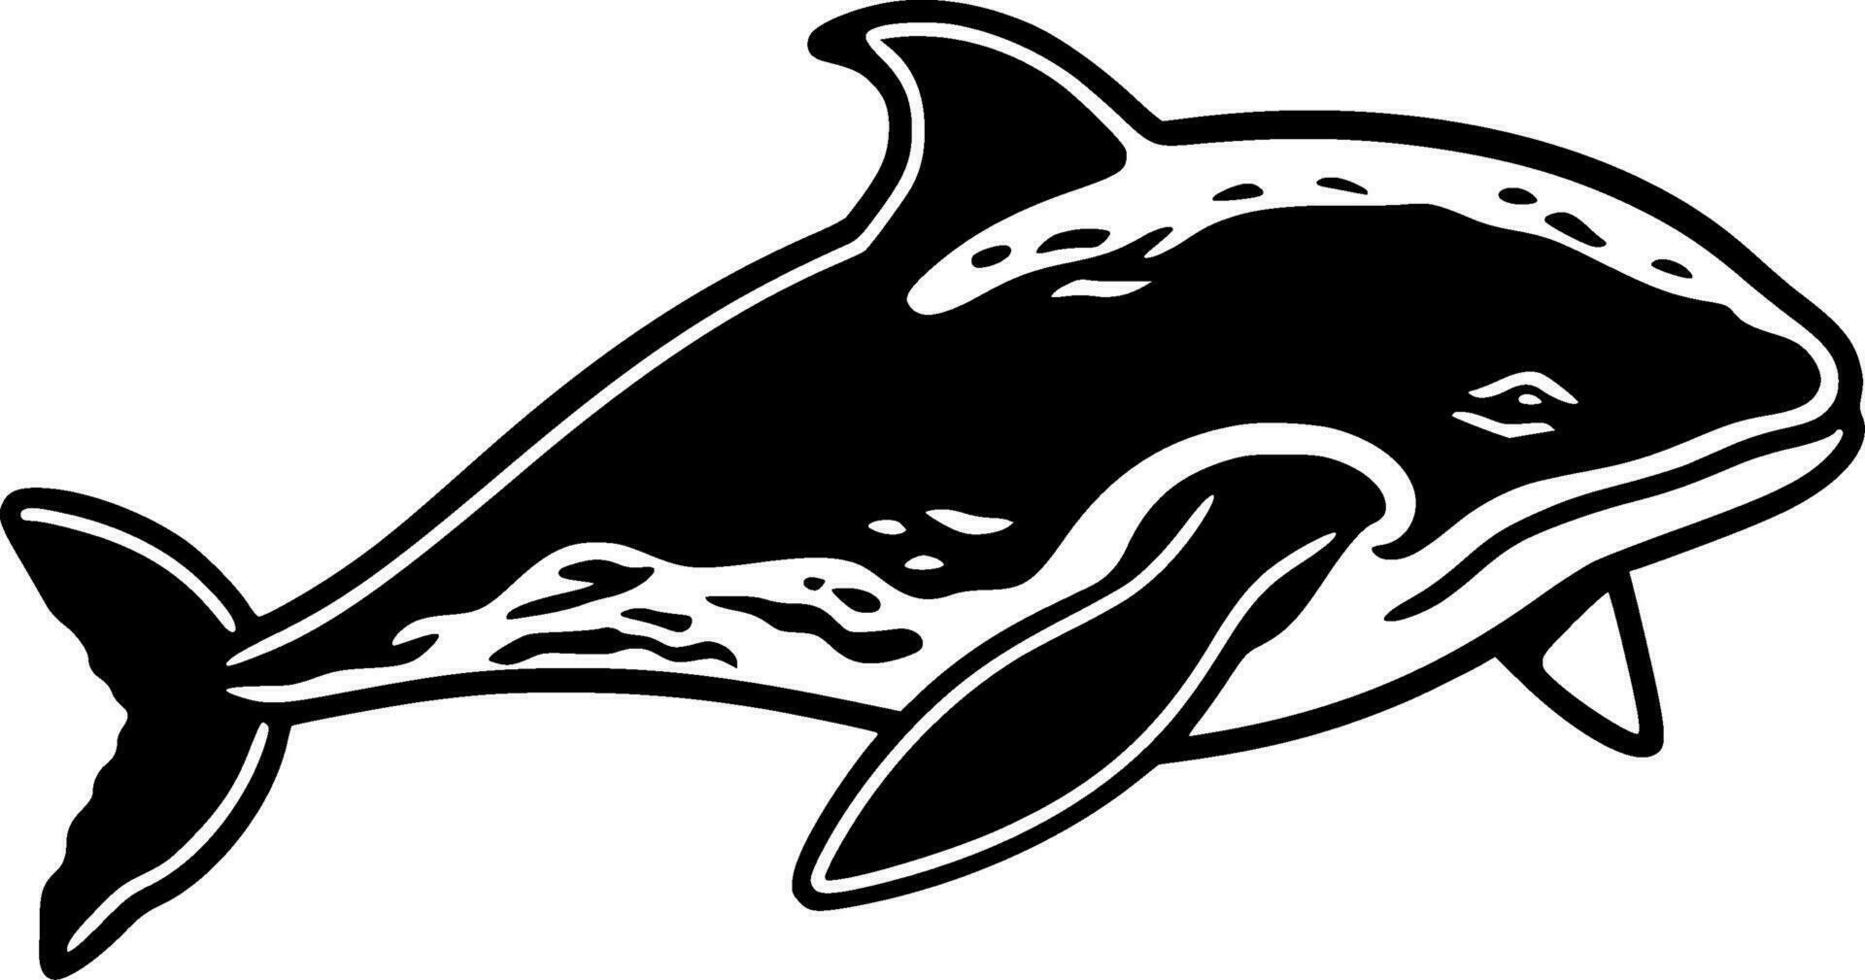 baleine - haute qualité vecteur logo - vecteur illustration idéal pour T-shirt graphique